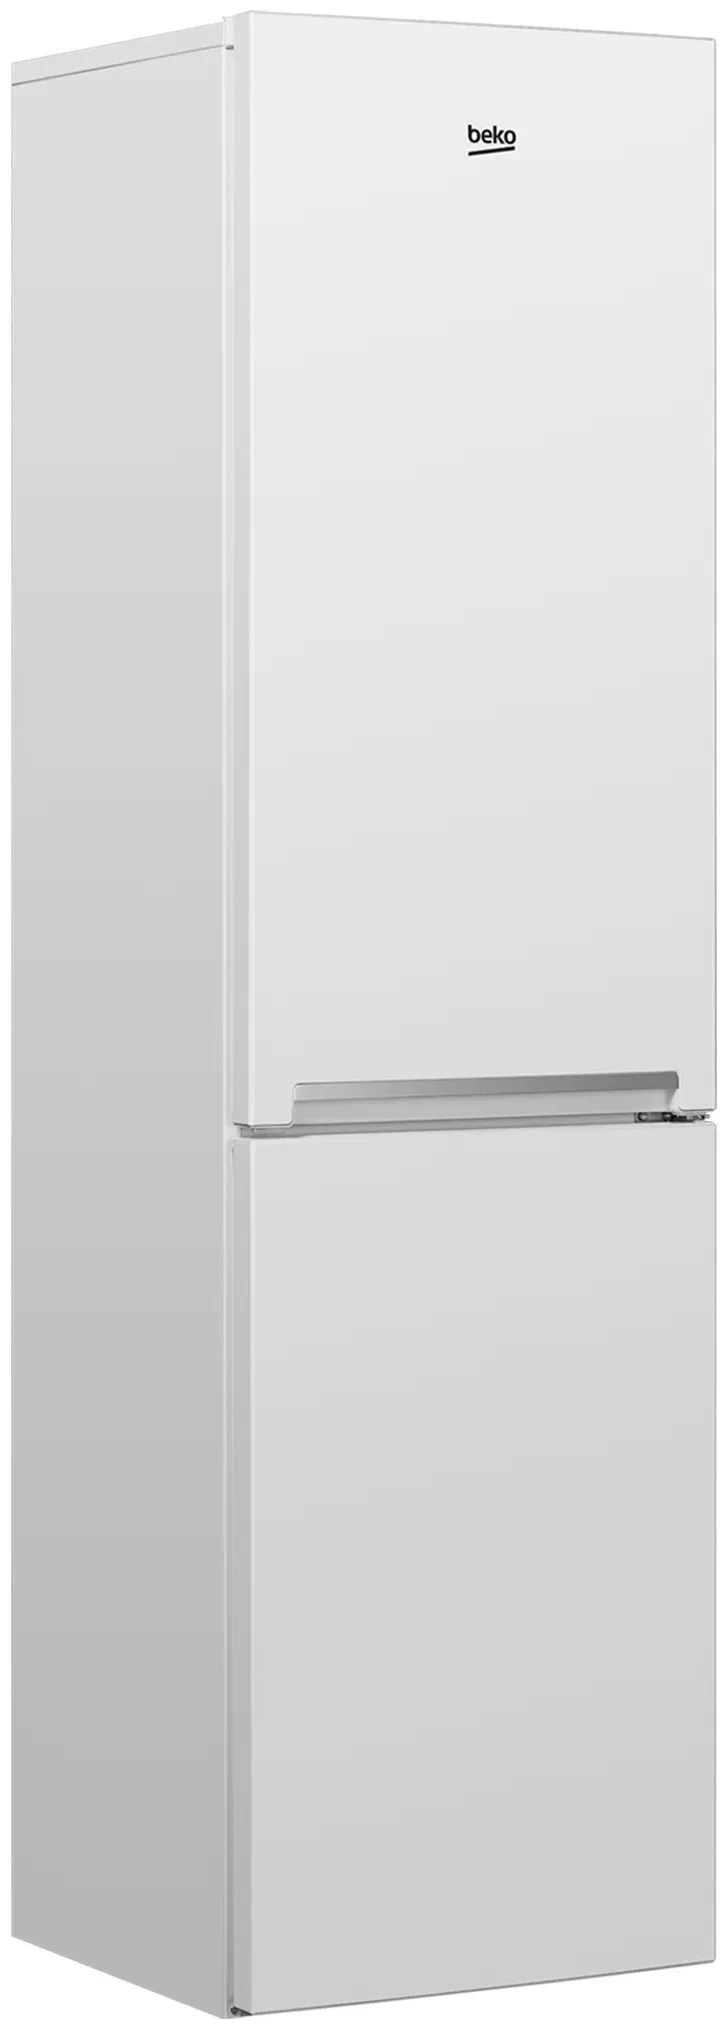 холодильник beko rcsk 335m20w, купить в Красноярске холодильник beko rcsk 335m20w,  купить в Красноярске дешево холодильник beko rcsk 335m20w, купить в Красноярске минимальной цене холодильник beko rcsk 335m20w